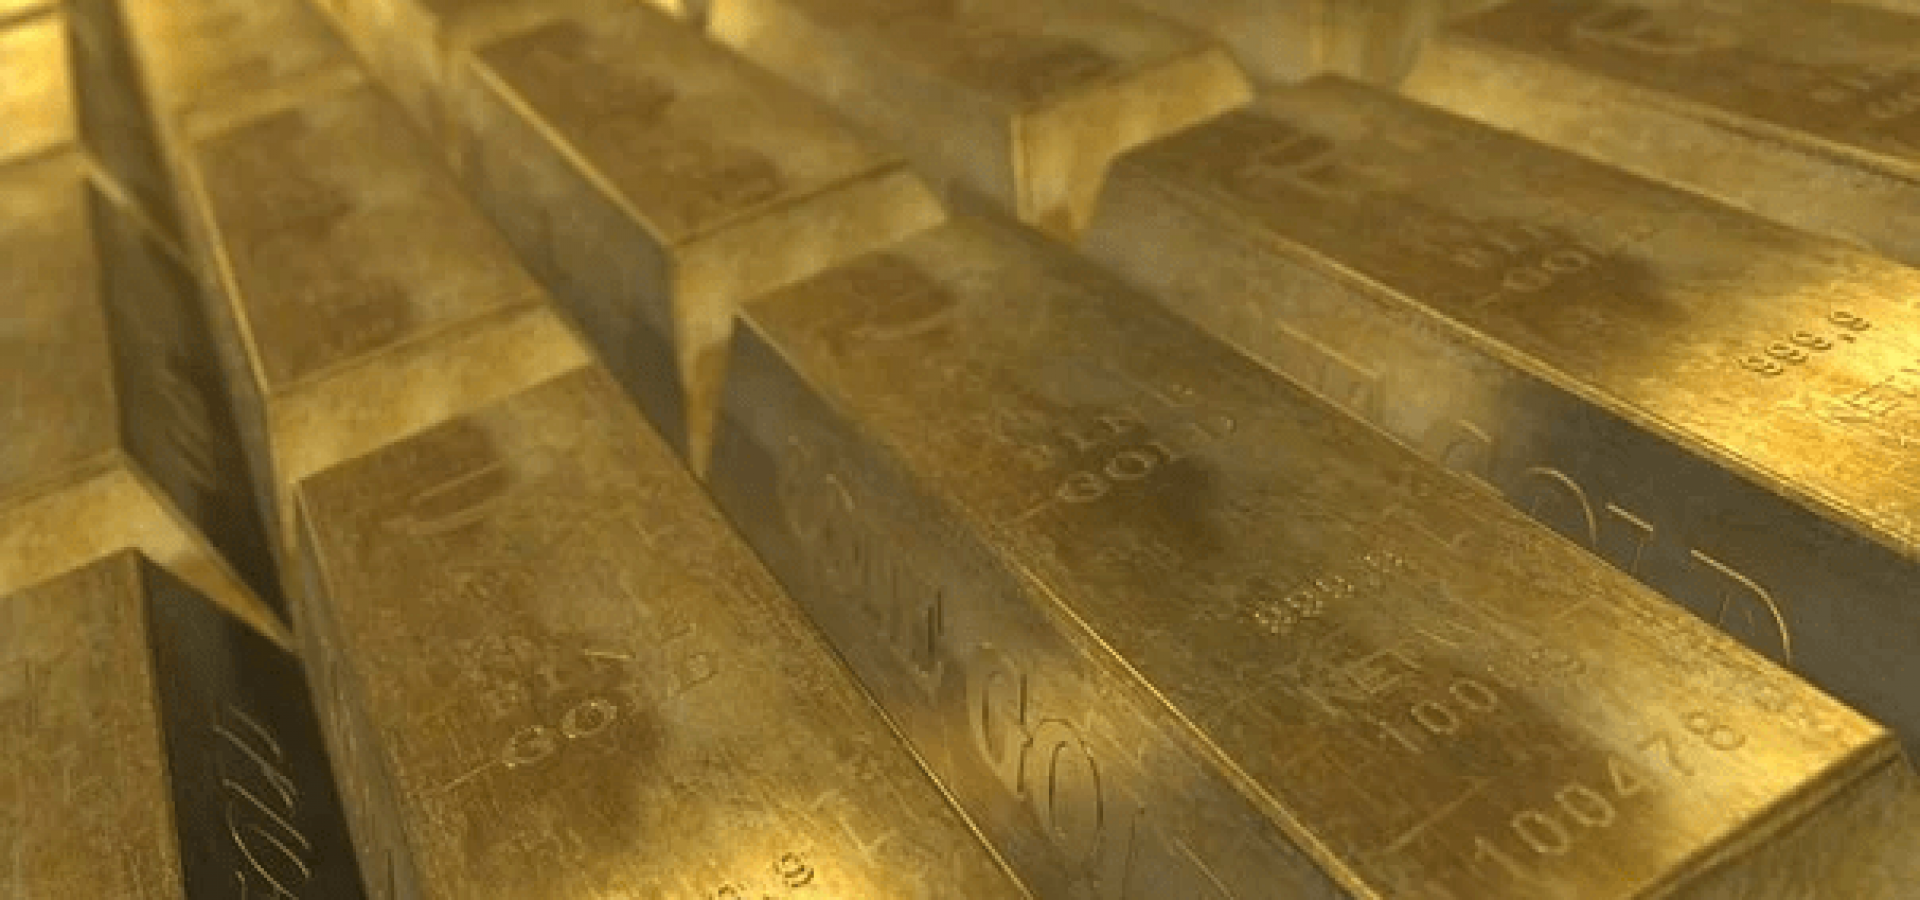 Gold prices decline; Russia-Ukraine talks in focus